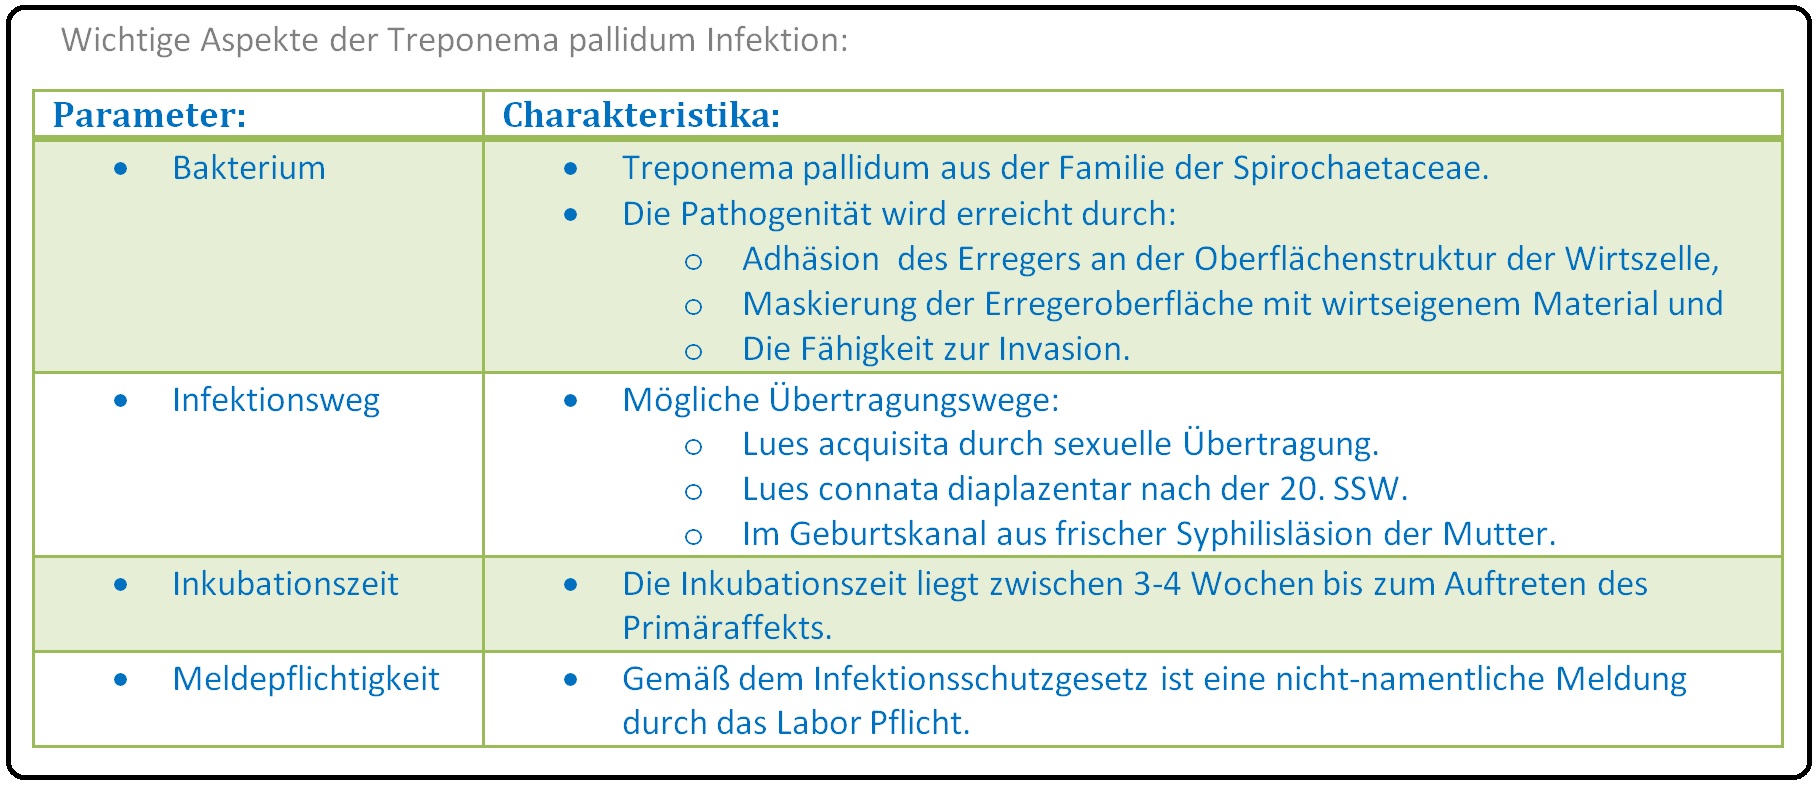 020 Wichtige Aspekte der Treponema pallidum Infektion